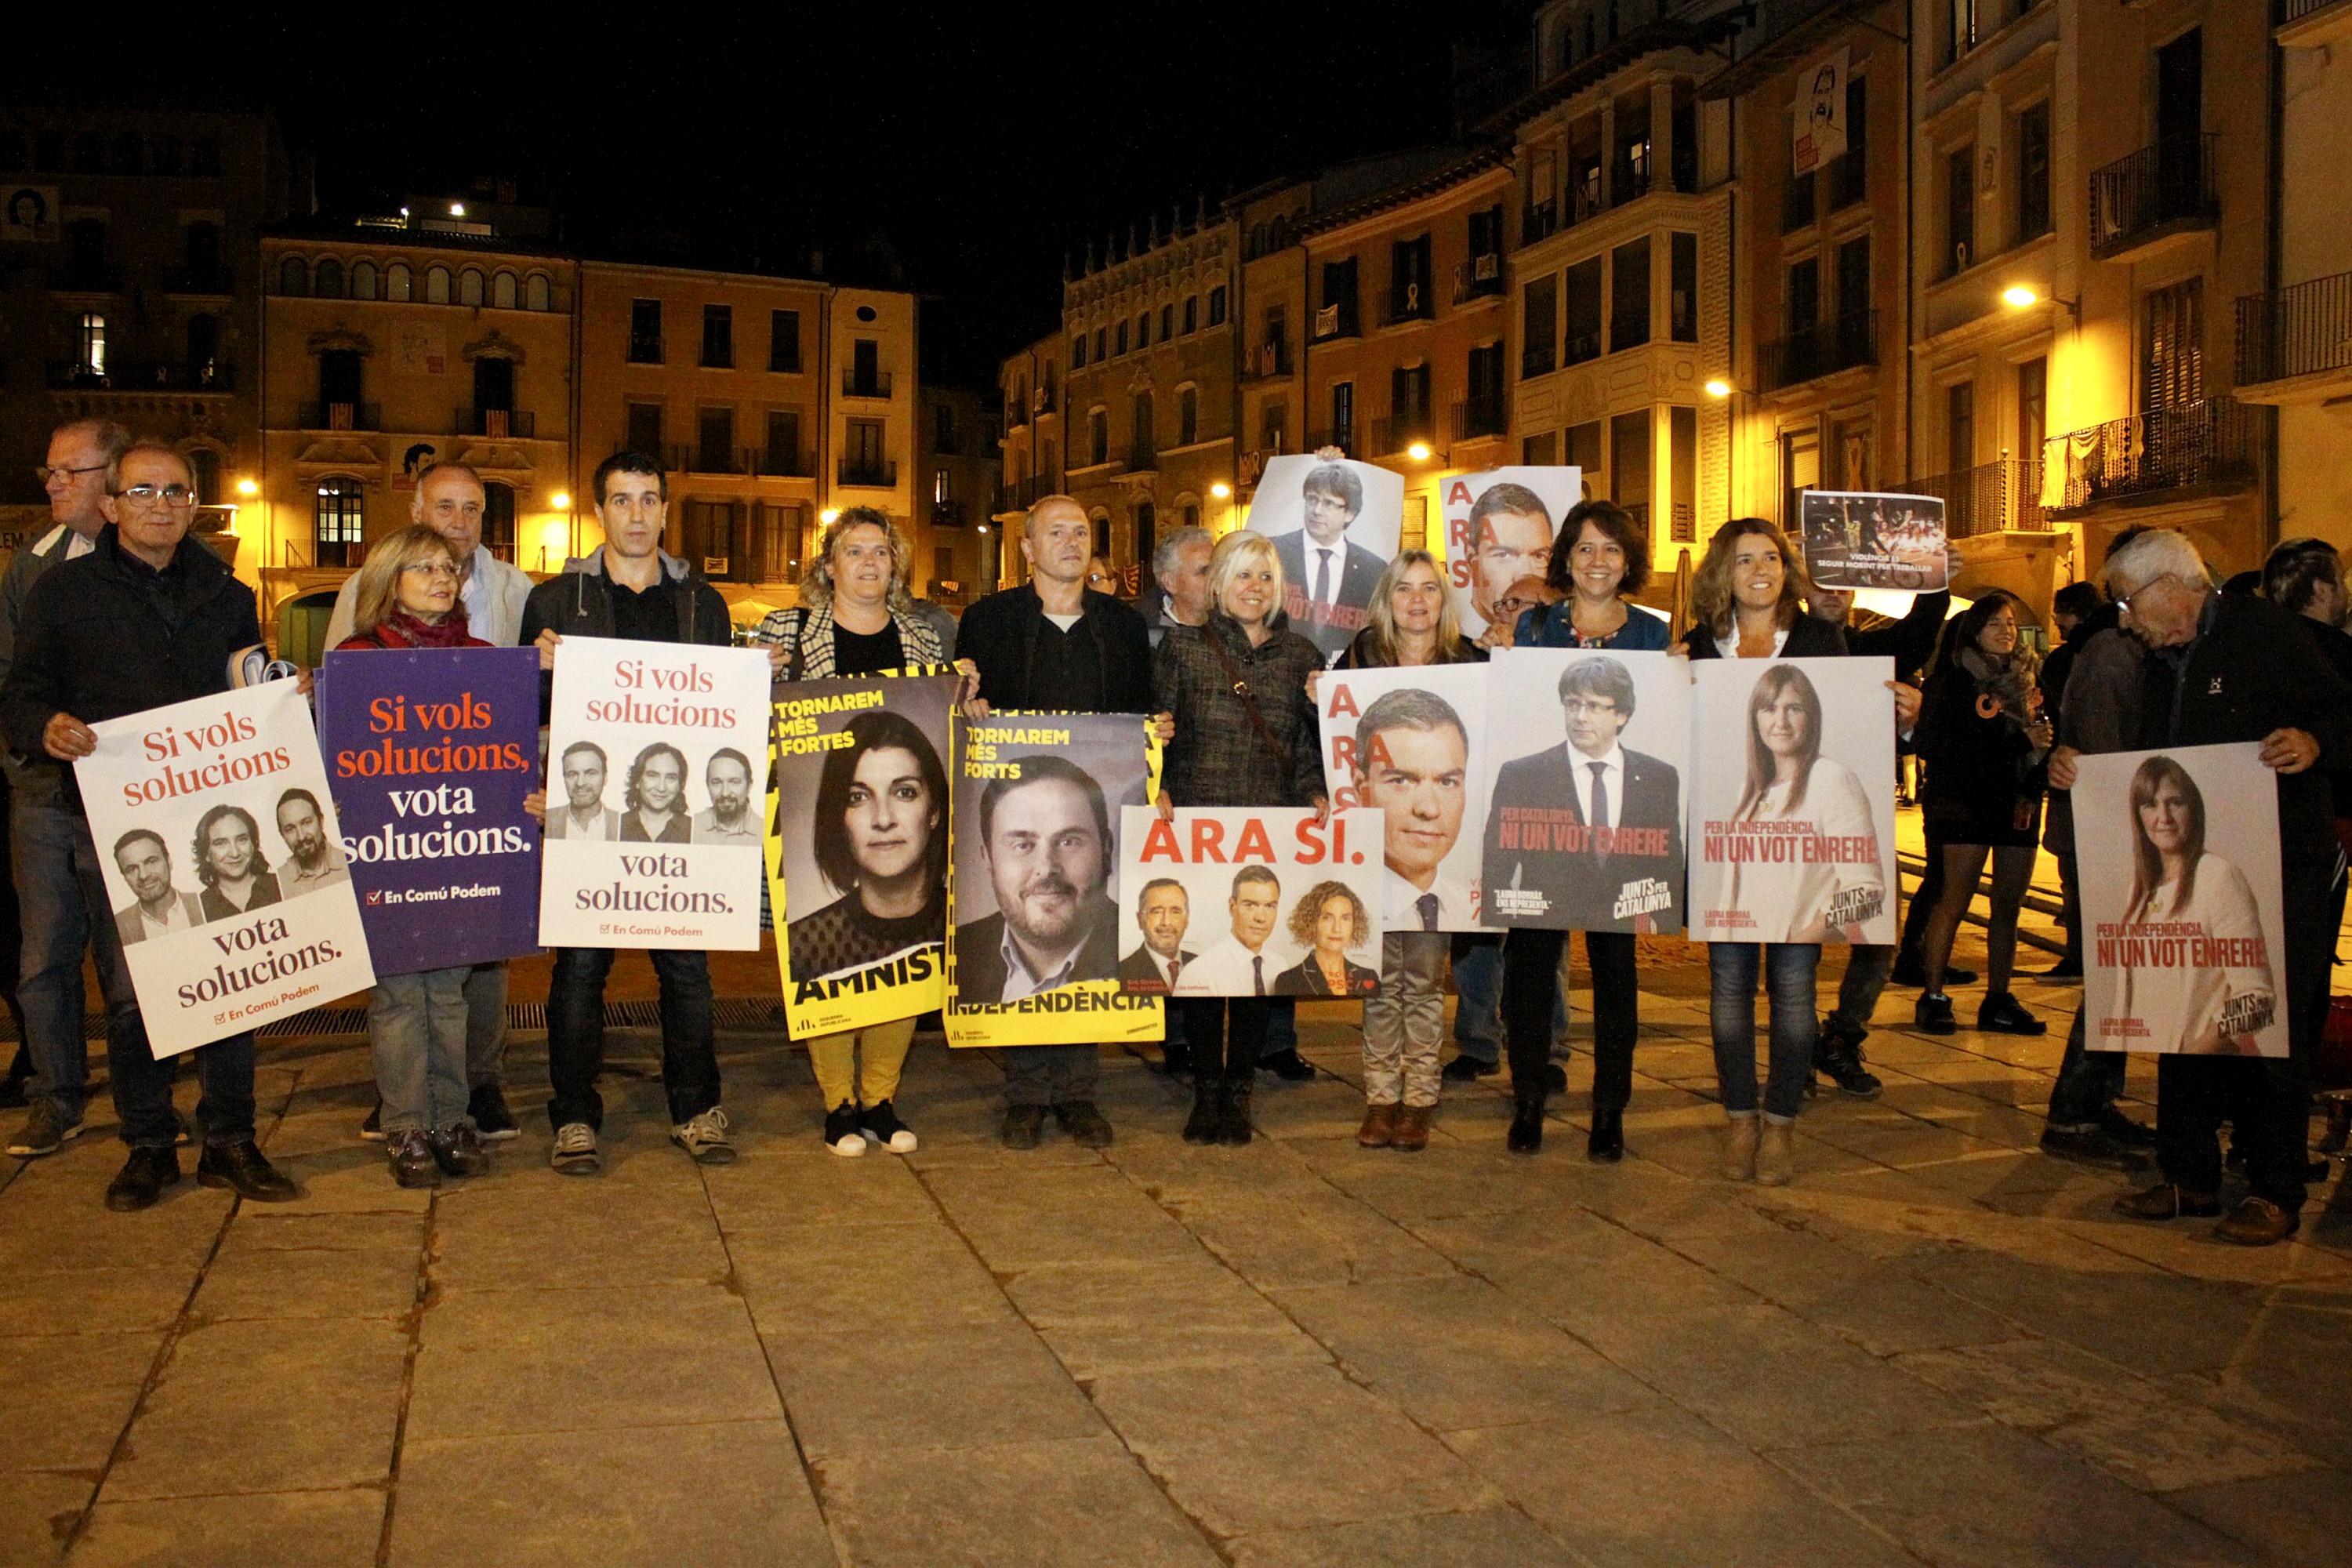 Representants d’En Comú Podem, ERC, PSC i JxCat, amb els respectius cartells electorals per a la campanya del 10-N